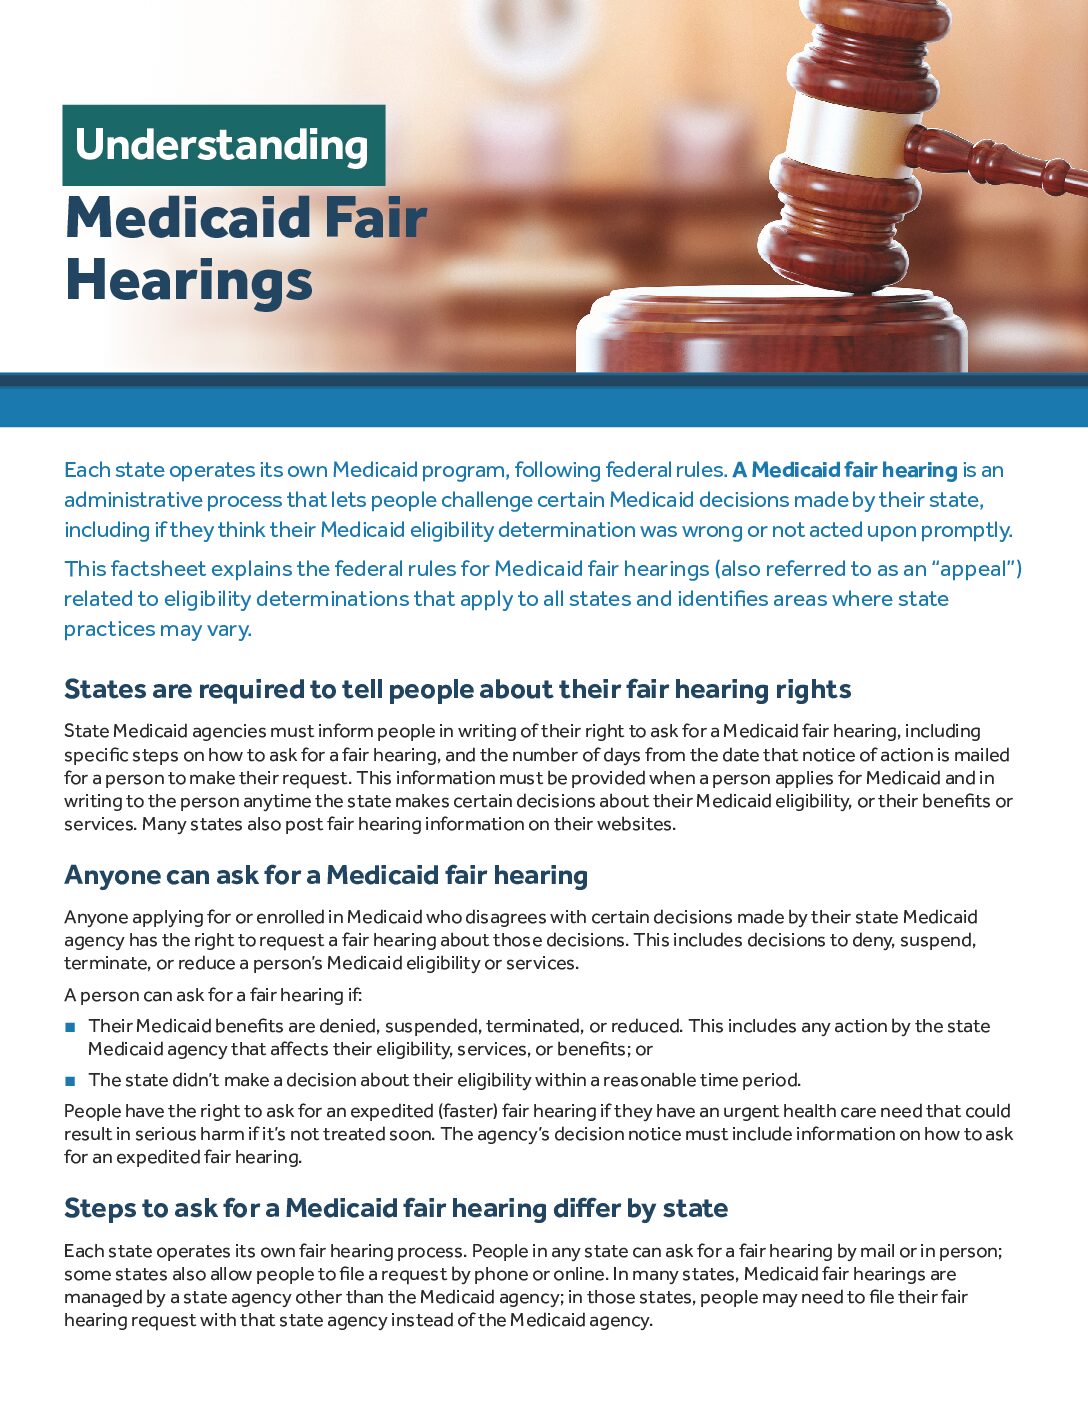 Understanding Medicaid Fair Hearings